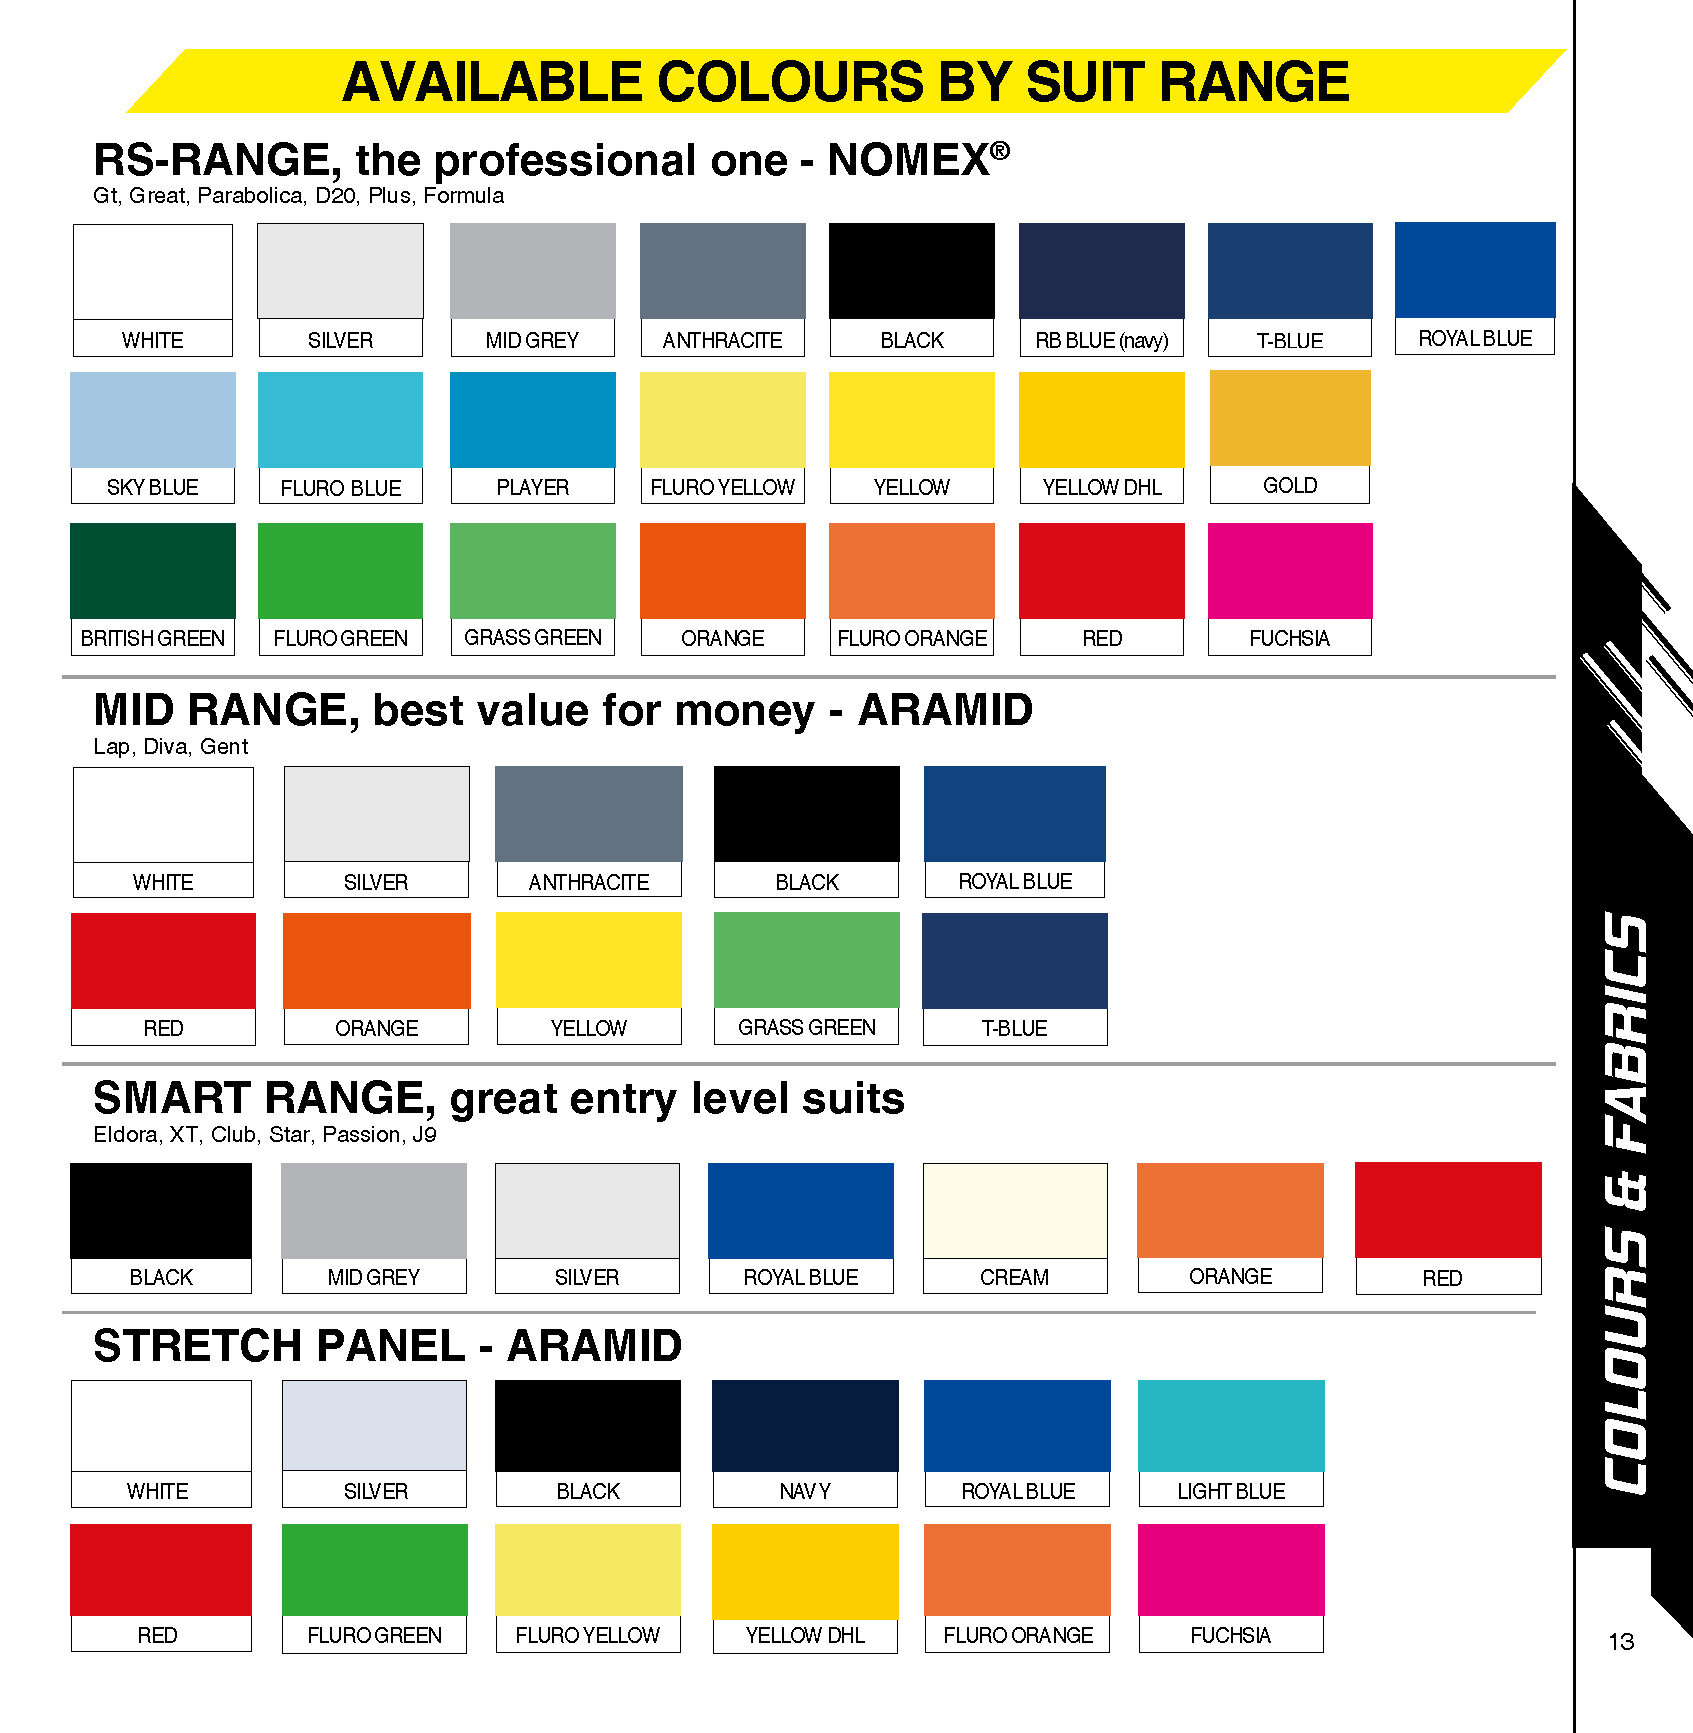 P1 Advanced Racewear Beschikbare kleuren per categorie